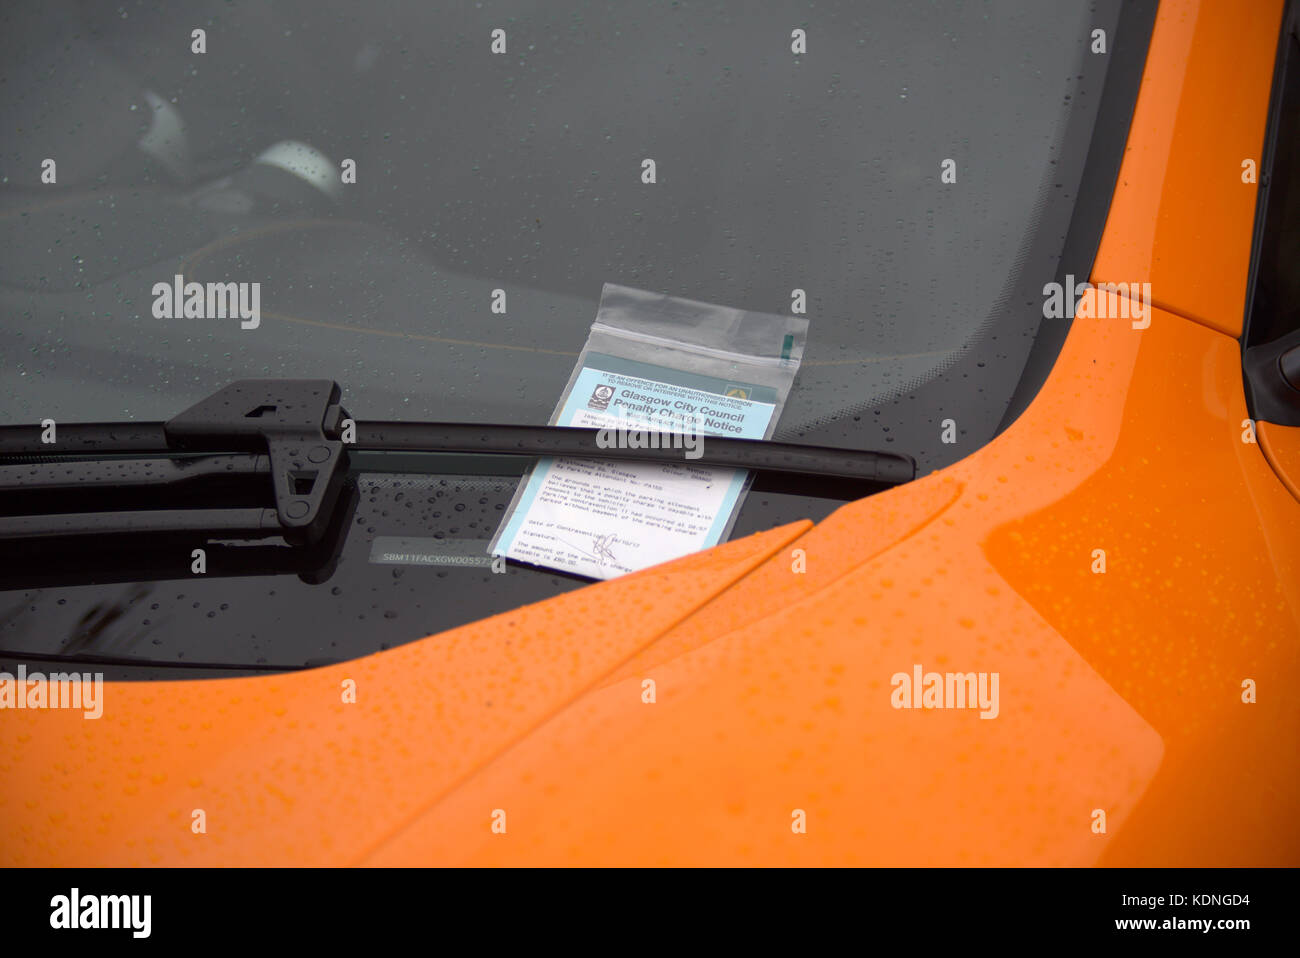 Cerrar un ticket de aparcamiento en el parabrisas de un supercoche de lujo deportivo naranja Foto de stock